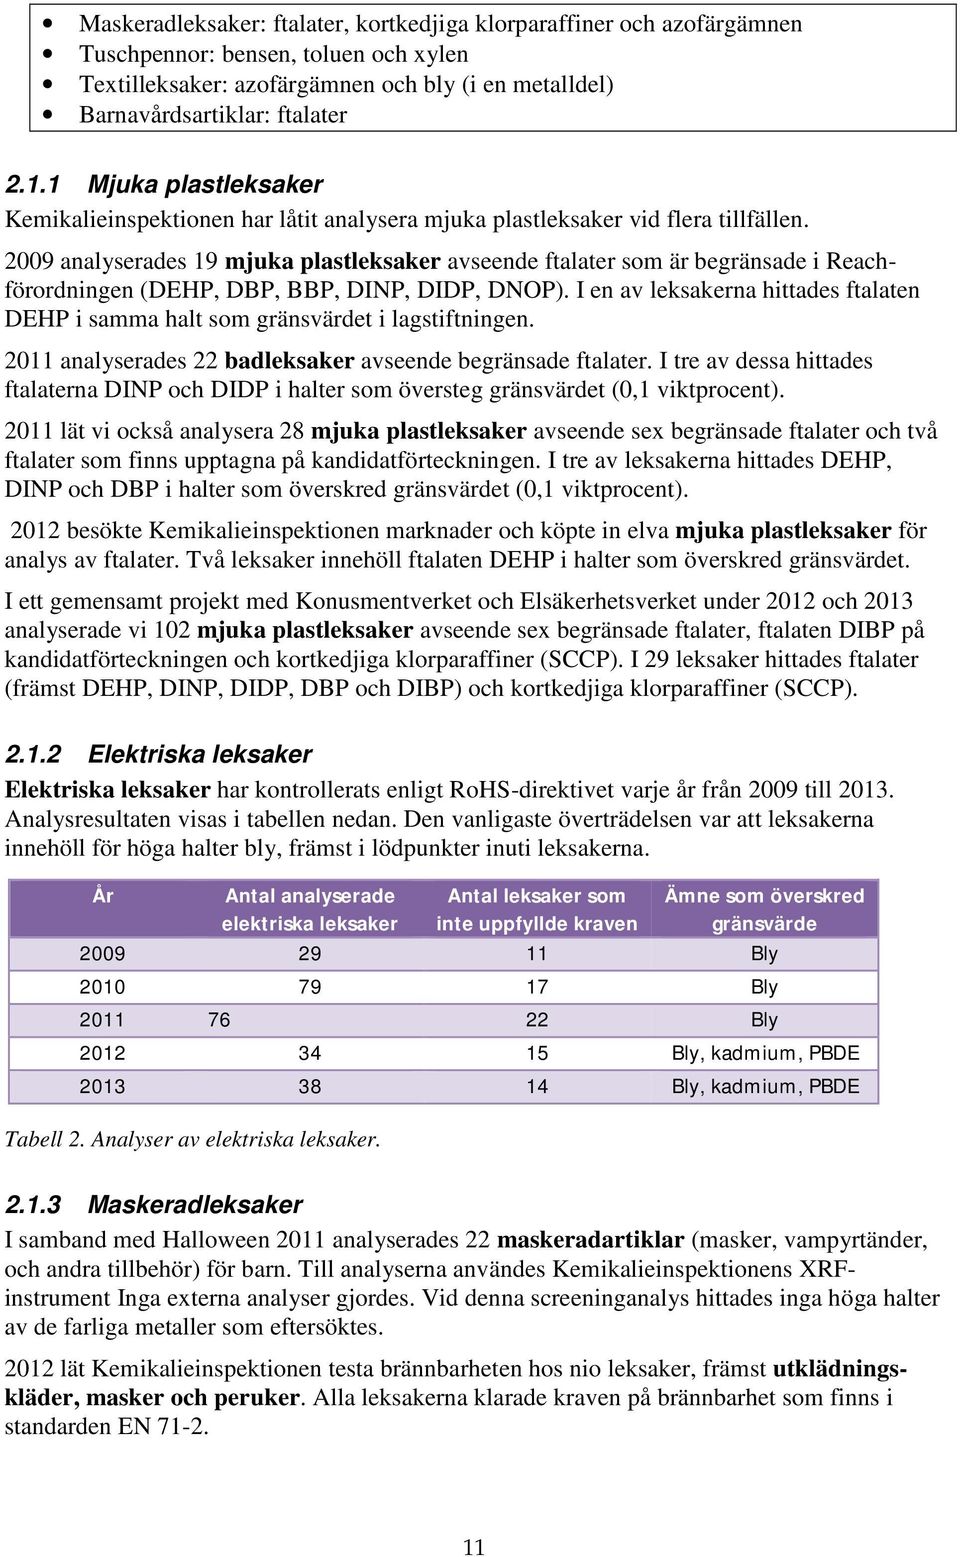 2009 analyserades 19 mjuka plastleksaker avseende ftalater som är begränsade i Reachförordningen (DEHP, DBP, BBP, DINP, DIDP, DNOP).